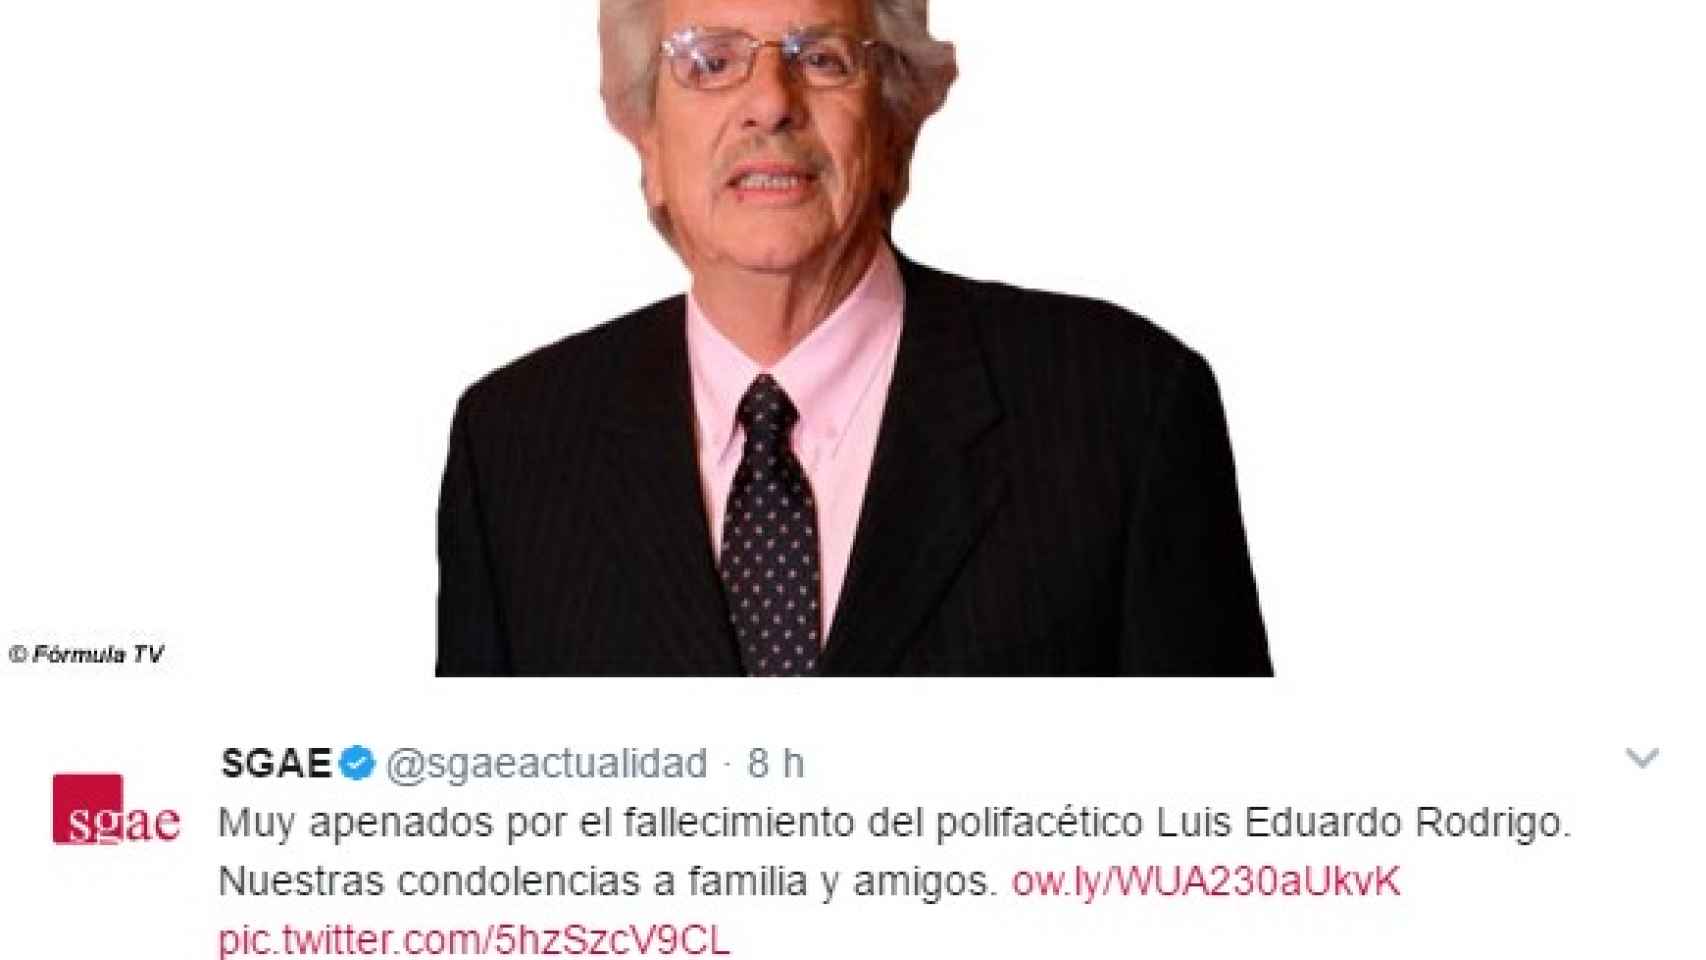 La SGAE comunica a través de un tuit el fallecimiento de Luis Eduardo Rodrigo.